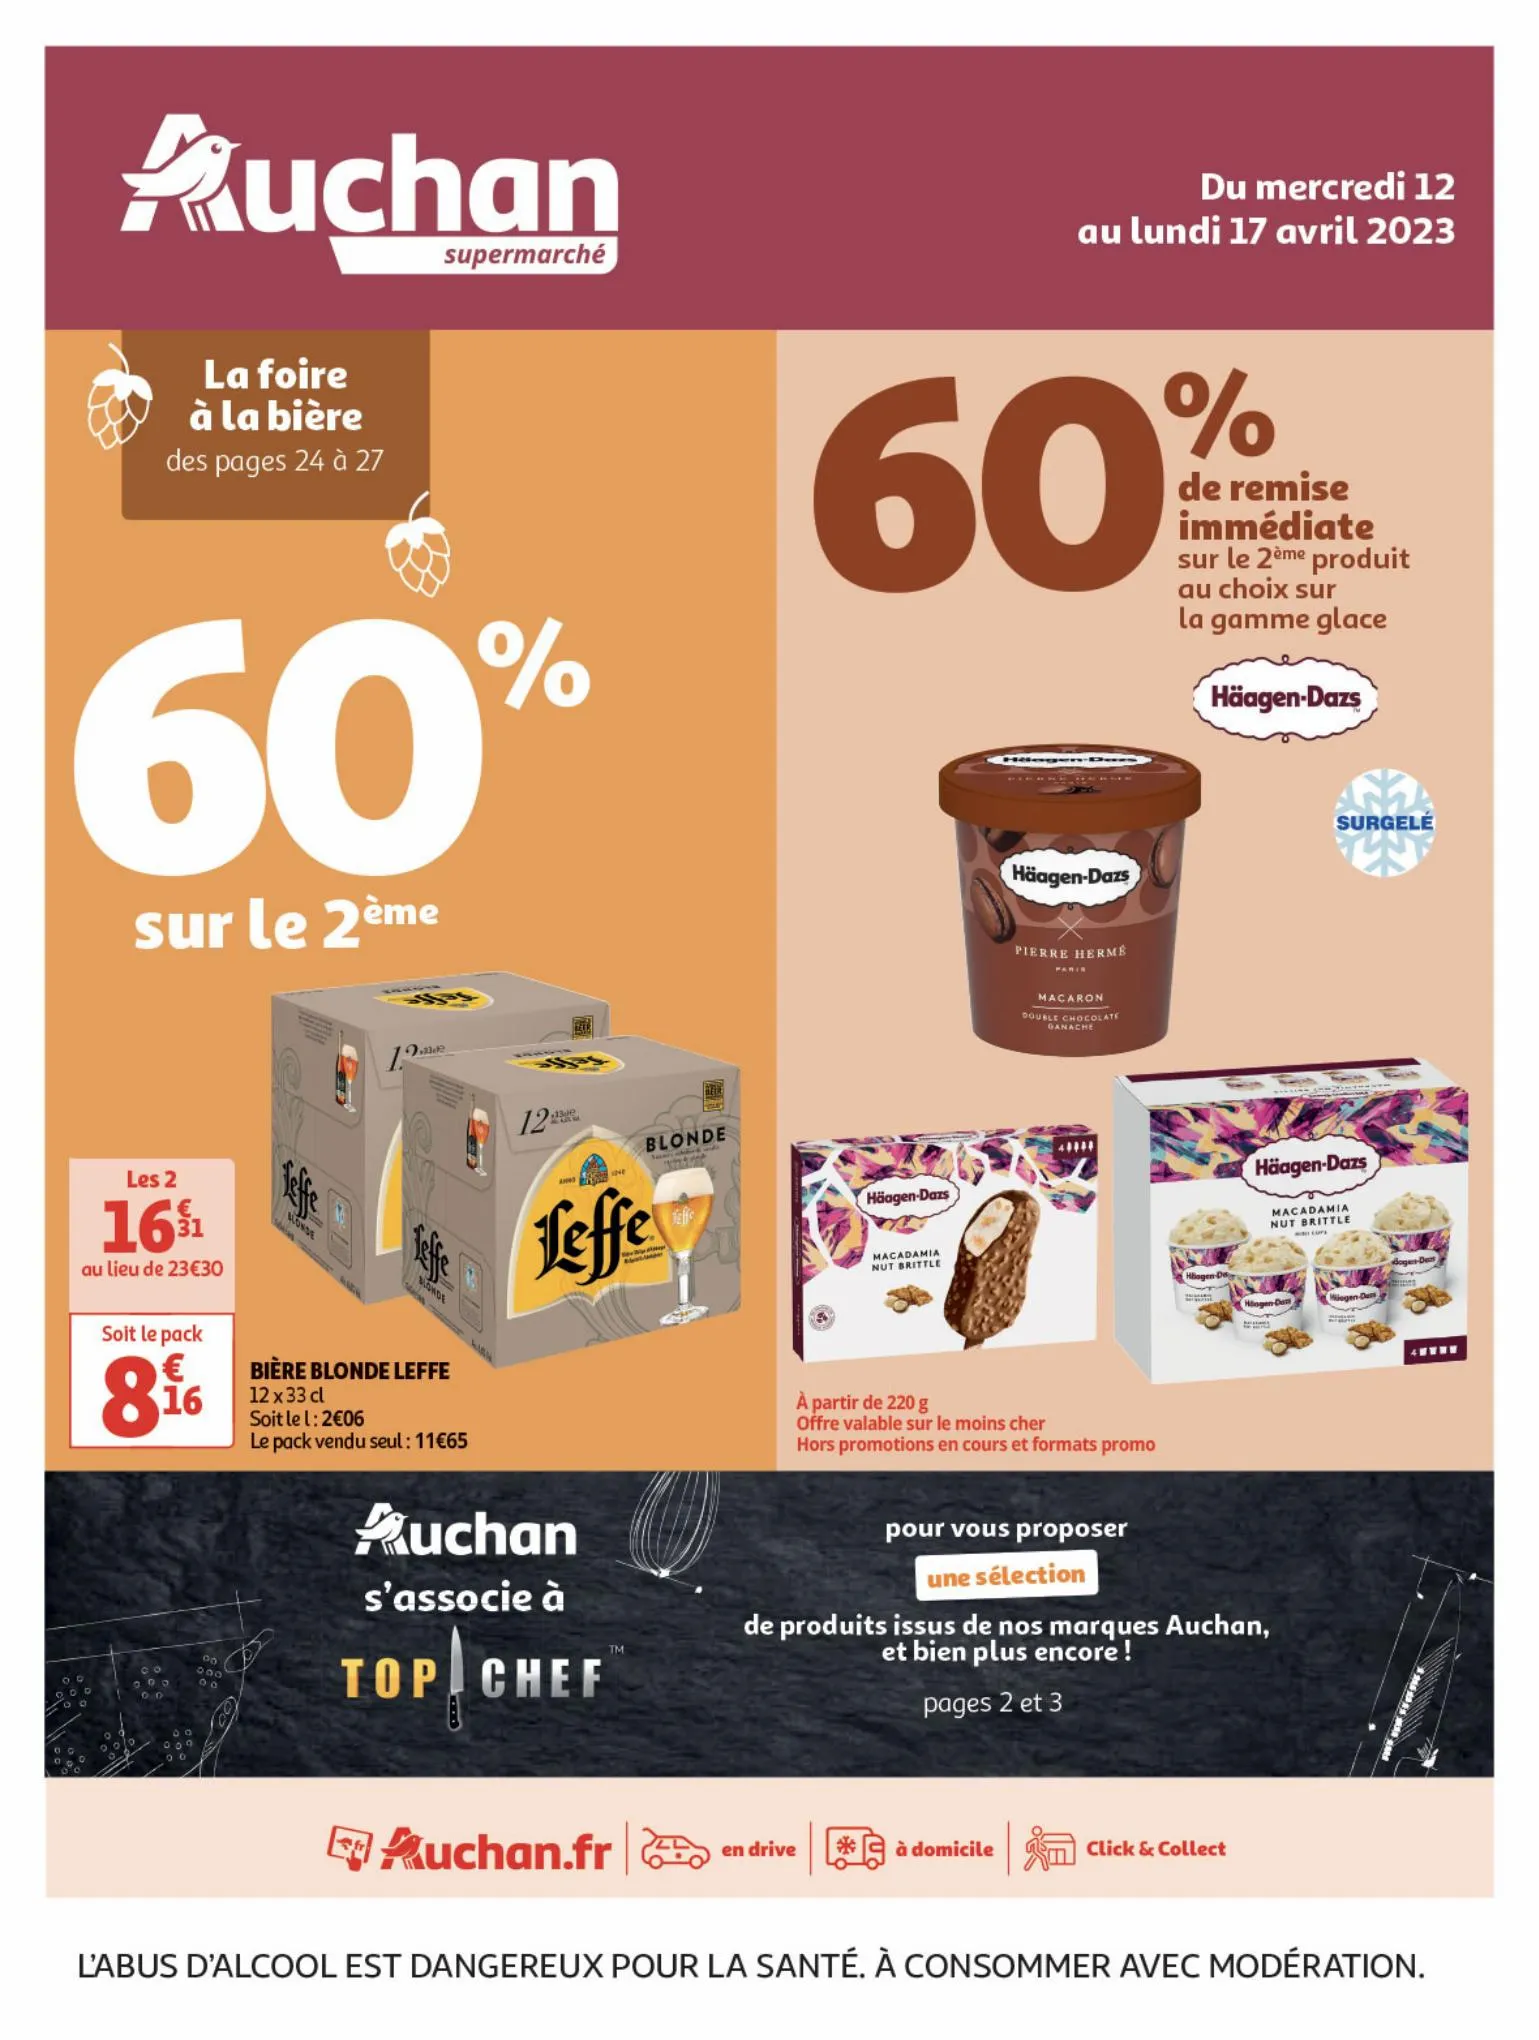 Catalogue Plein d'offres sur nos marques Auchan, page 00001